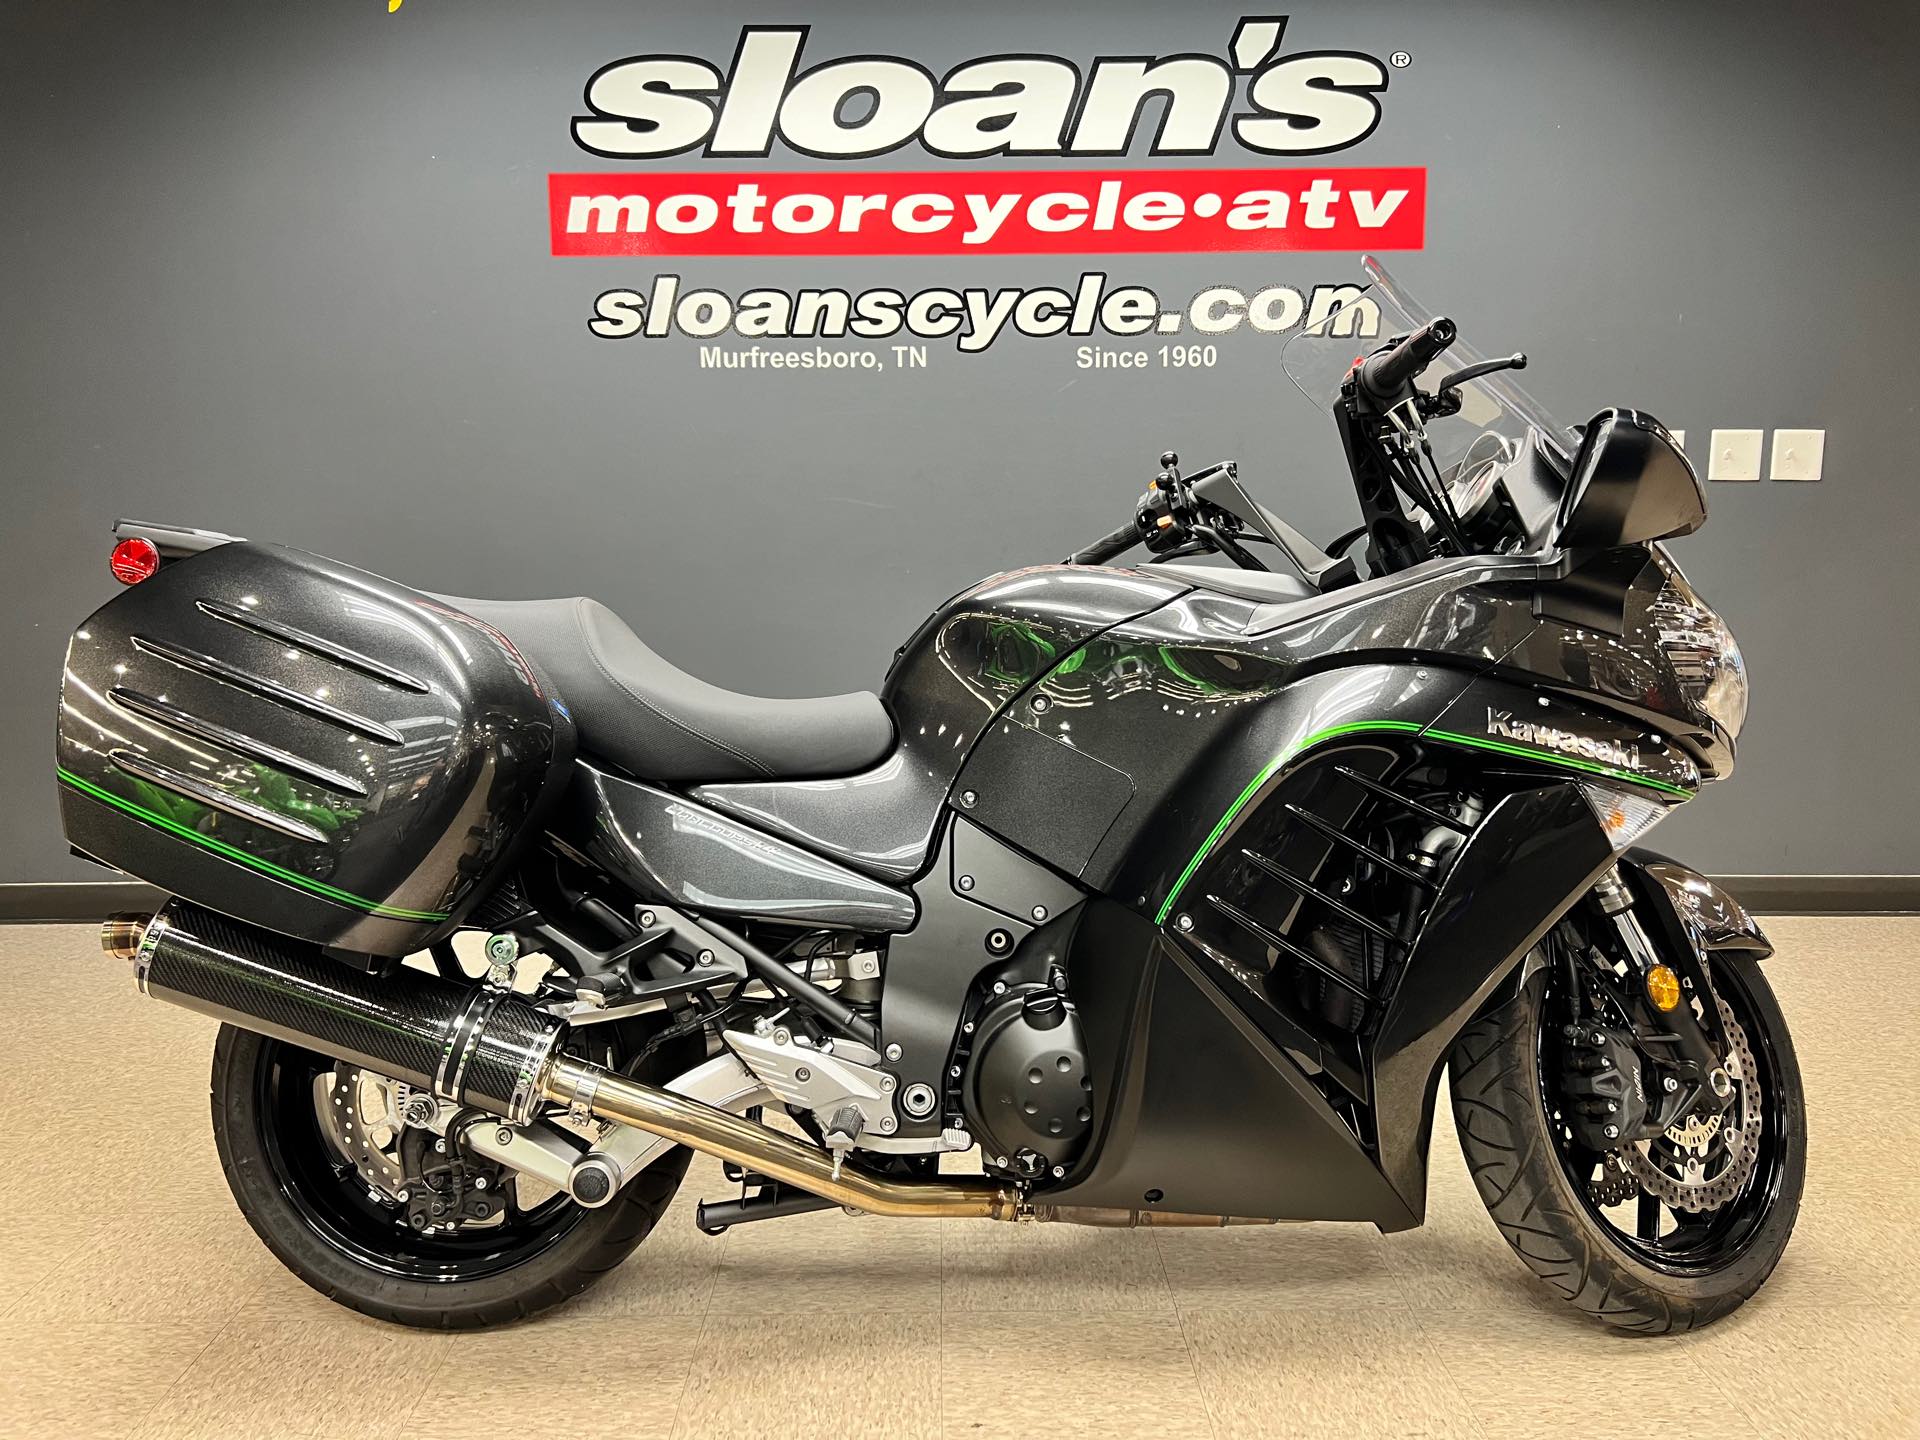 2018 Kawasaki Concours 14 ABS at Sloans Motorcycle ATV, Murfreesboro, TN, 37129